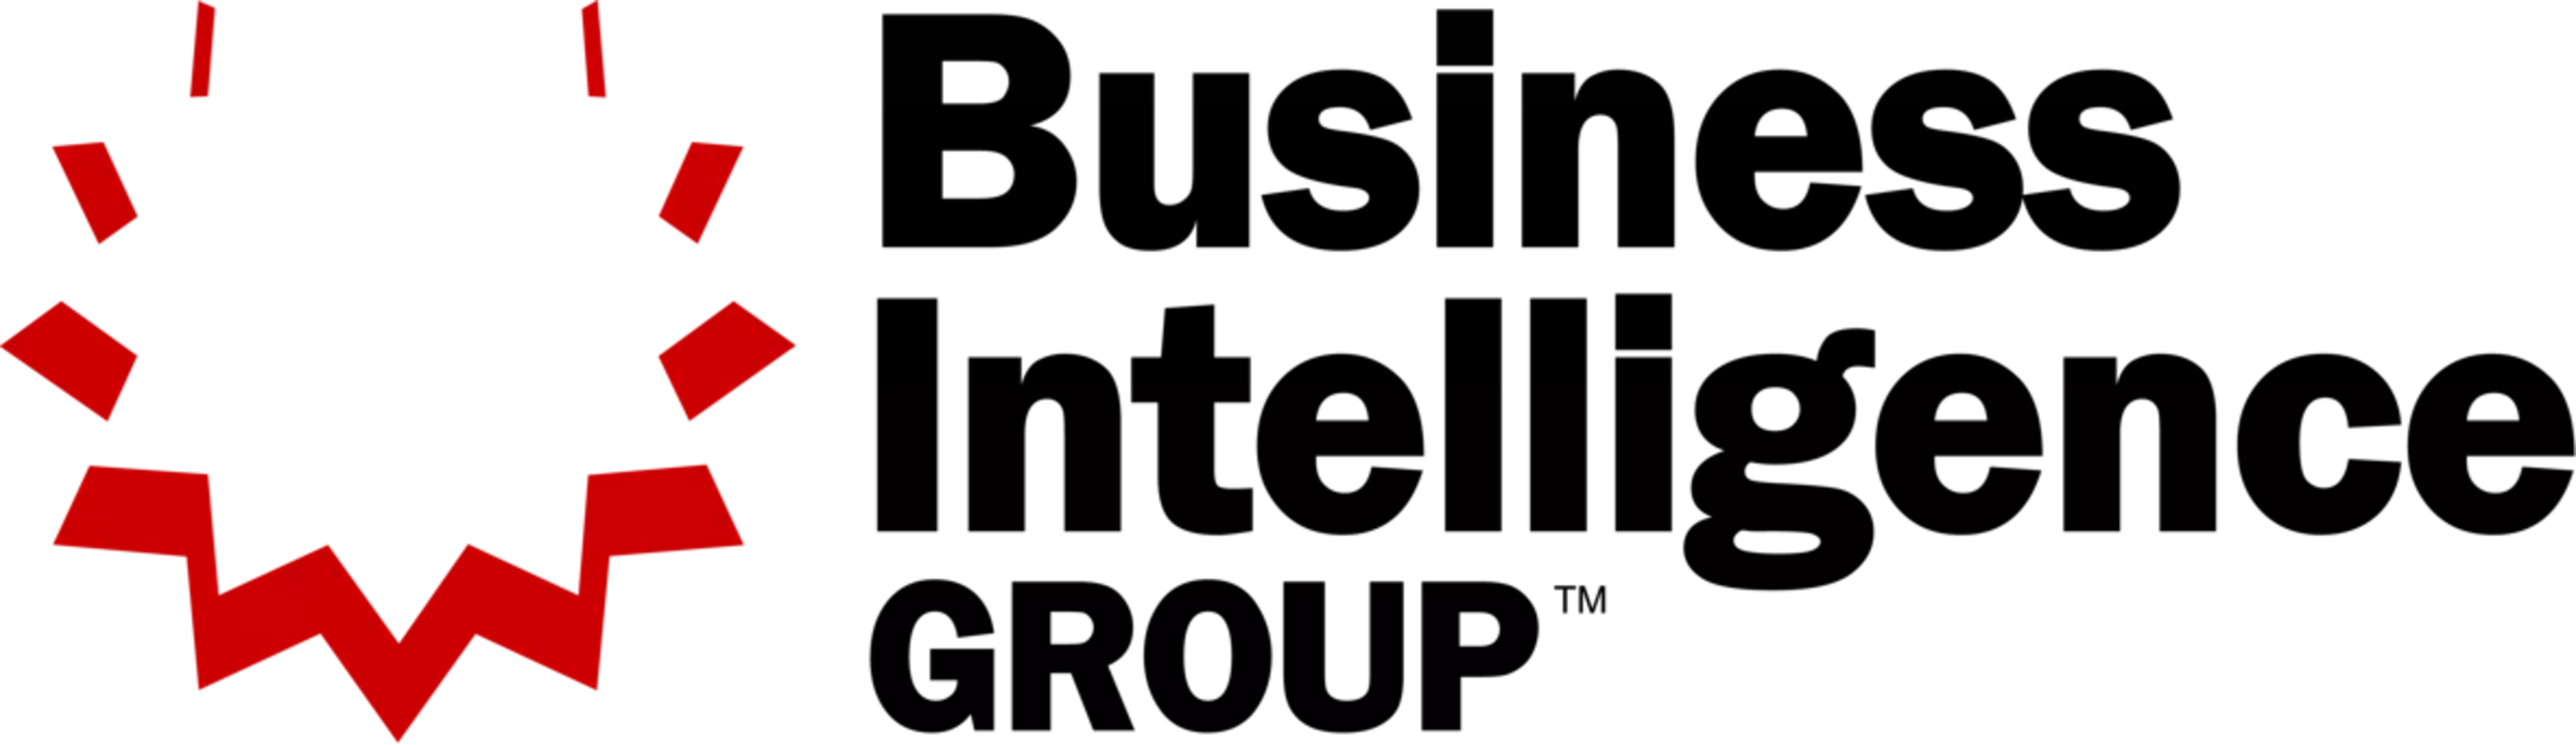 Business_Intelligence_Group_Logo